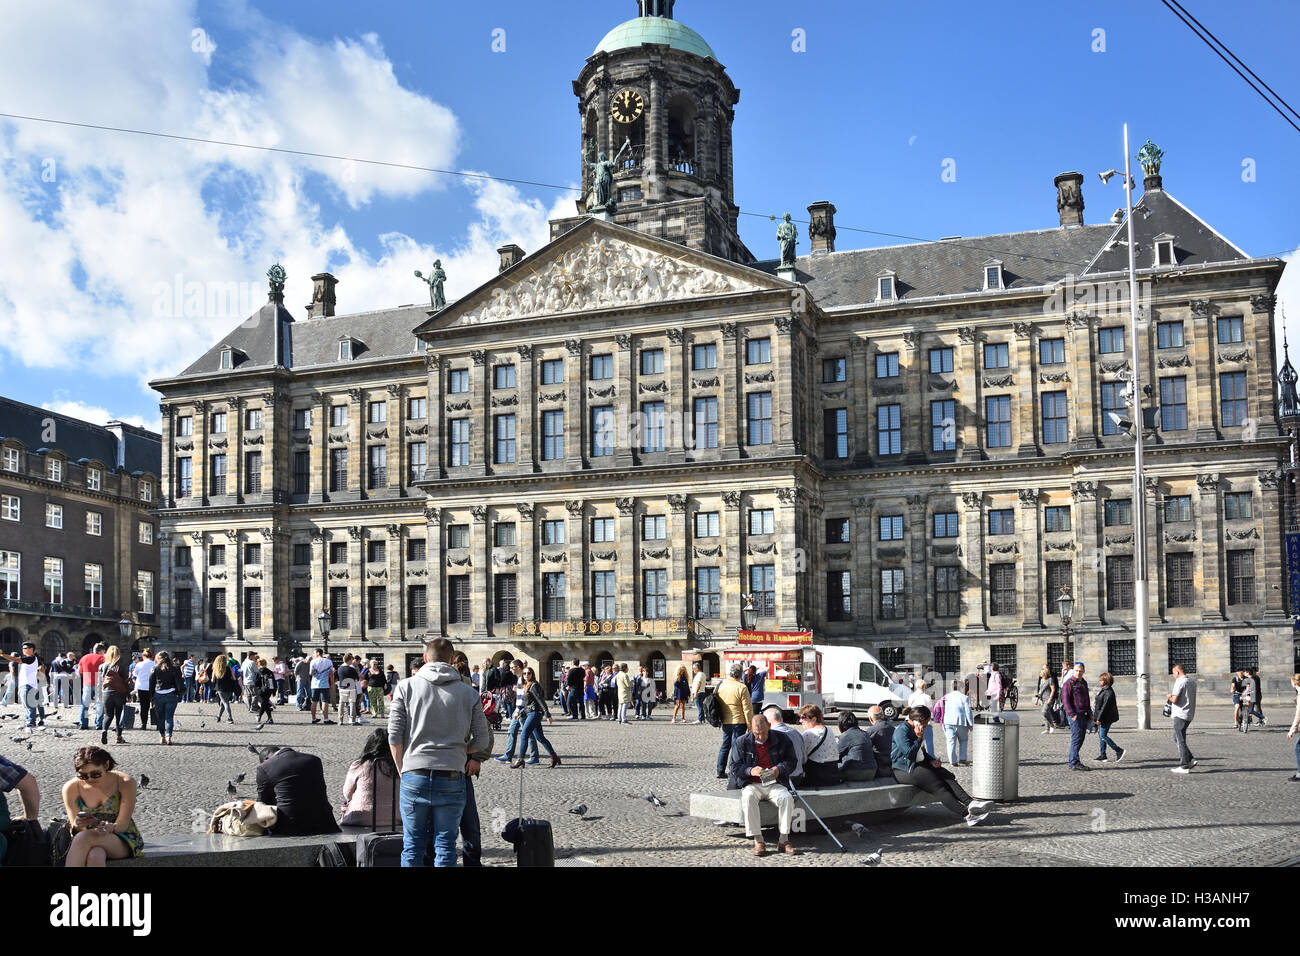 Le Palais Royal - Koninklijk Paleis 17e siècle, Amsterdam - à la place du Dam le Néerlandais Pays-Bas Banque D'Images